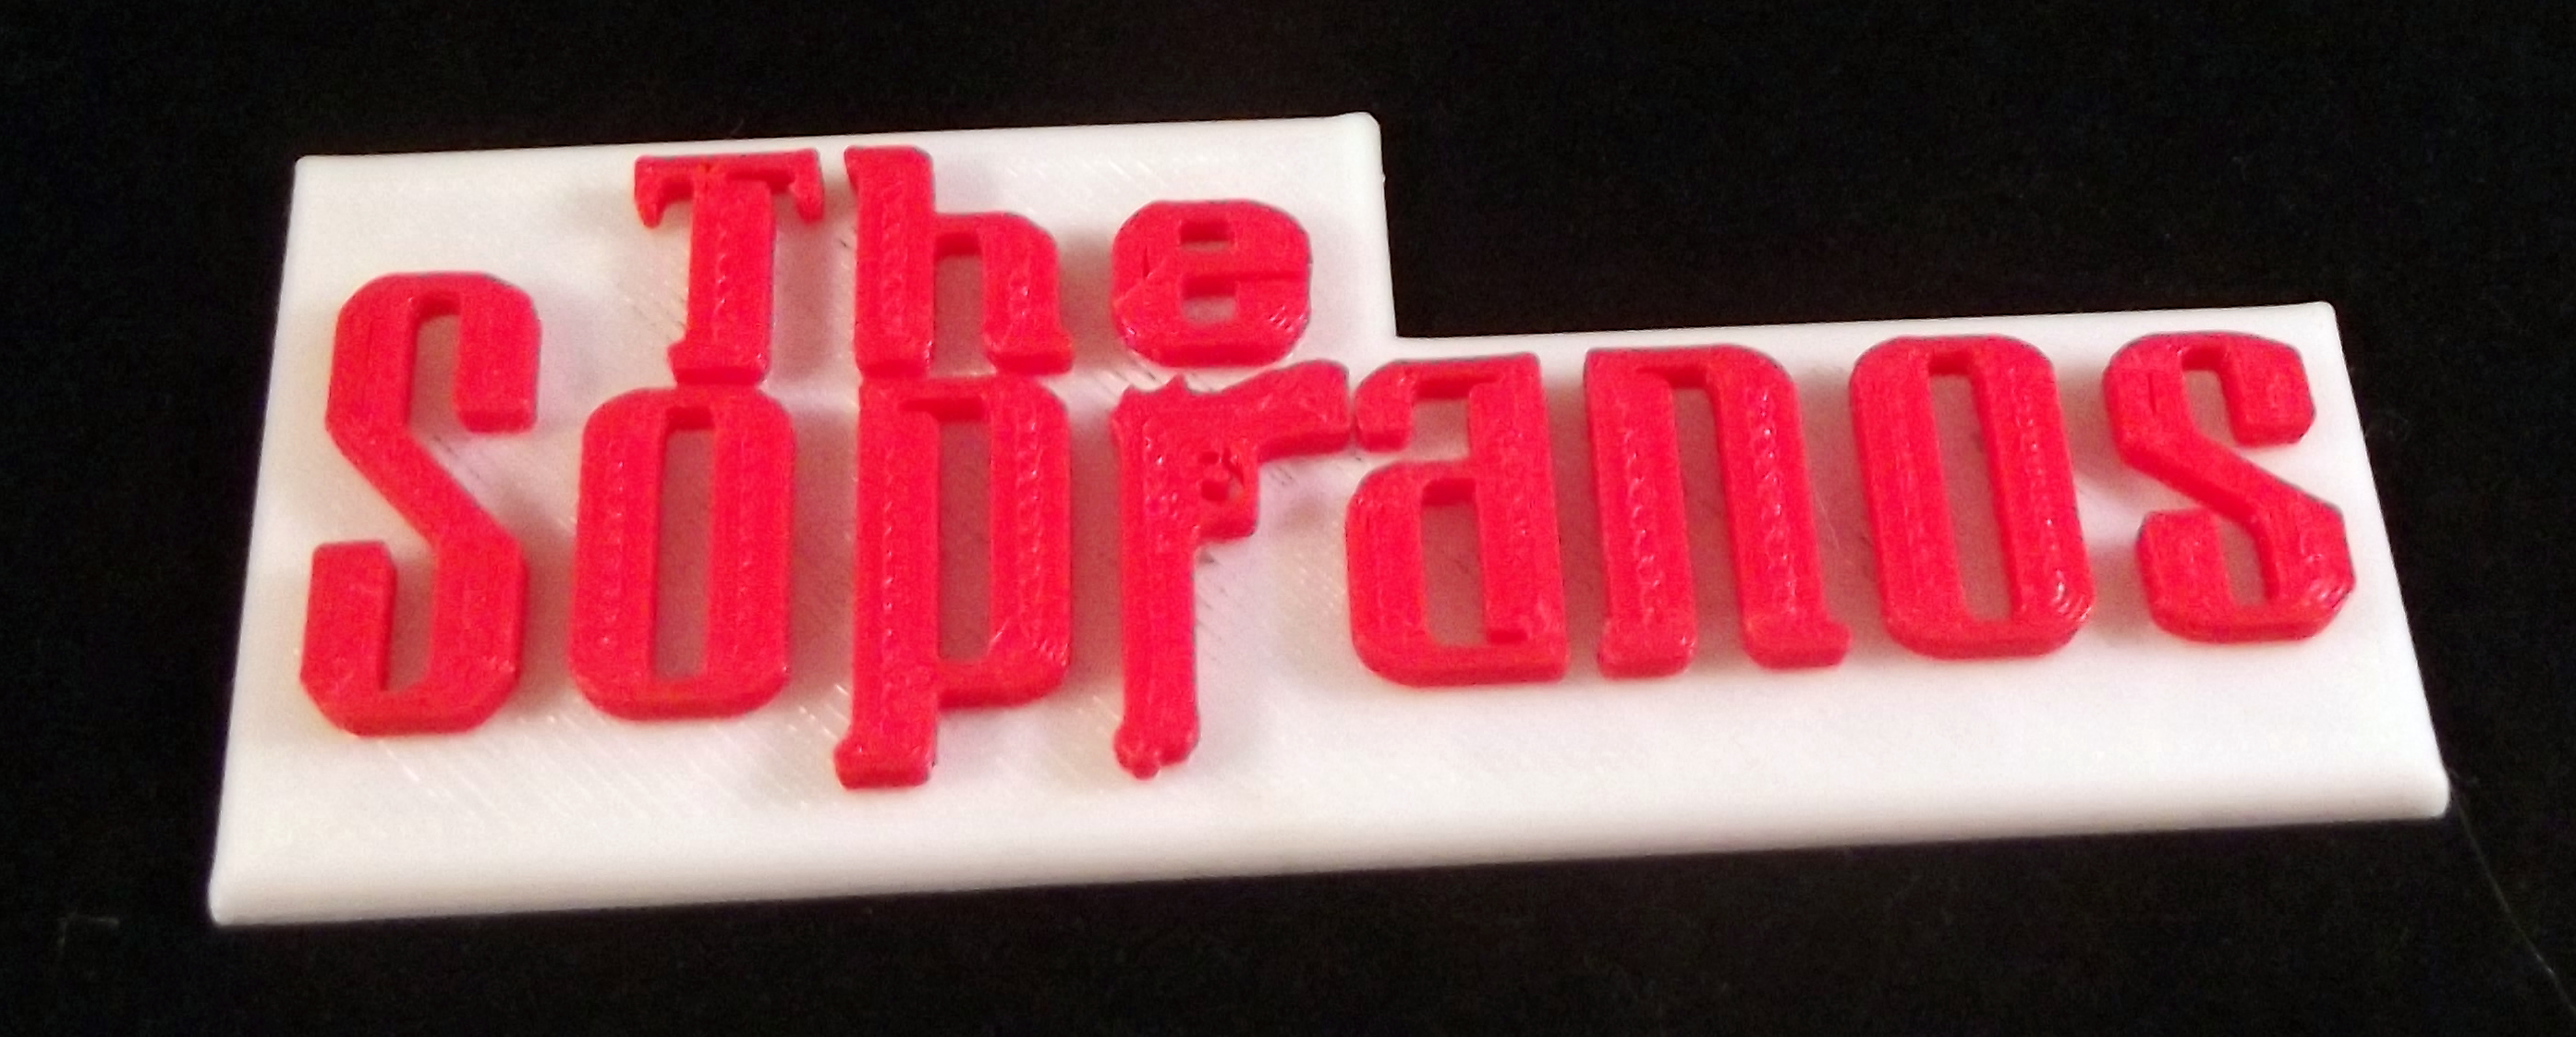 Sopranos Logo